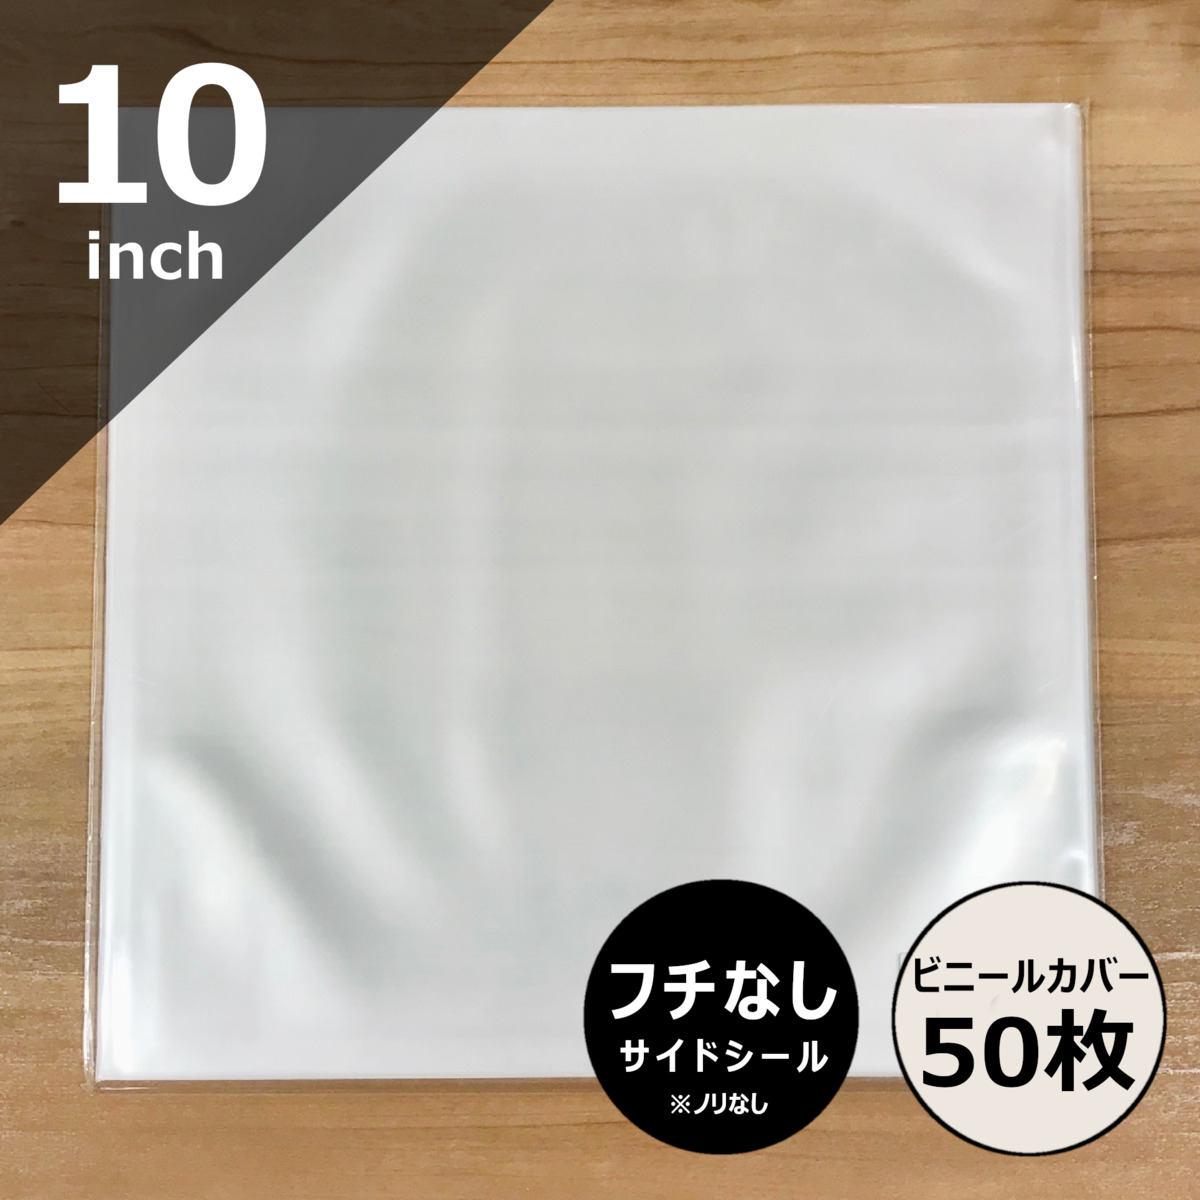 【楽天市場】【10インチ用ビニールカバー 50枚セット】SP盤外袋 